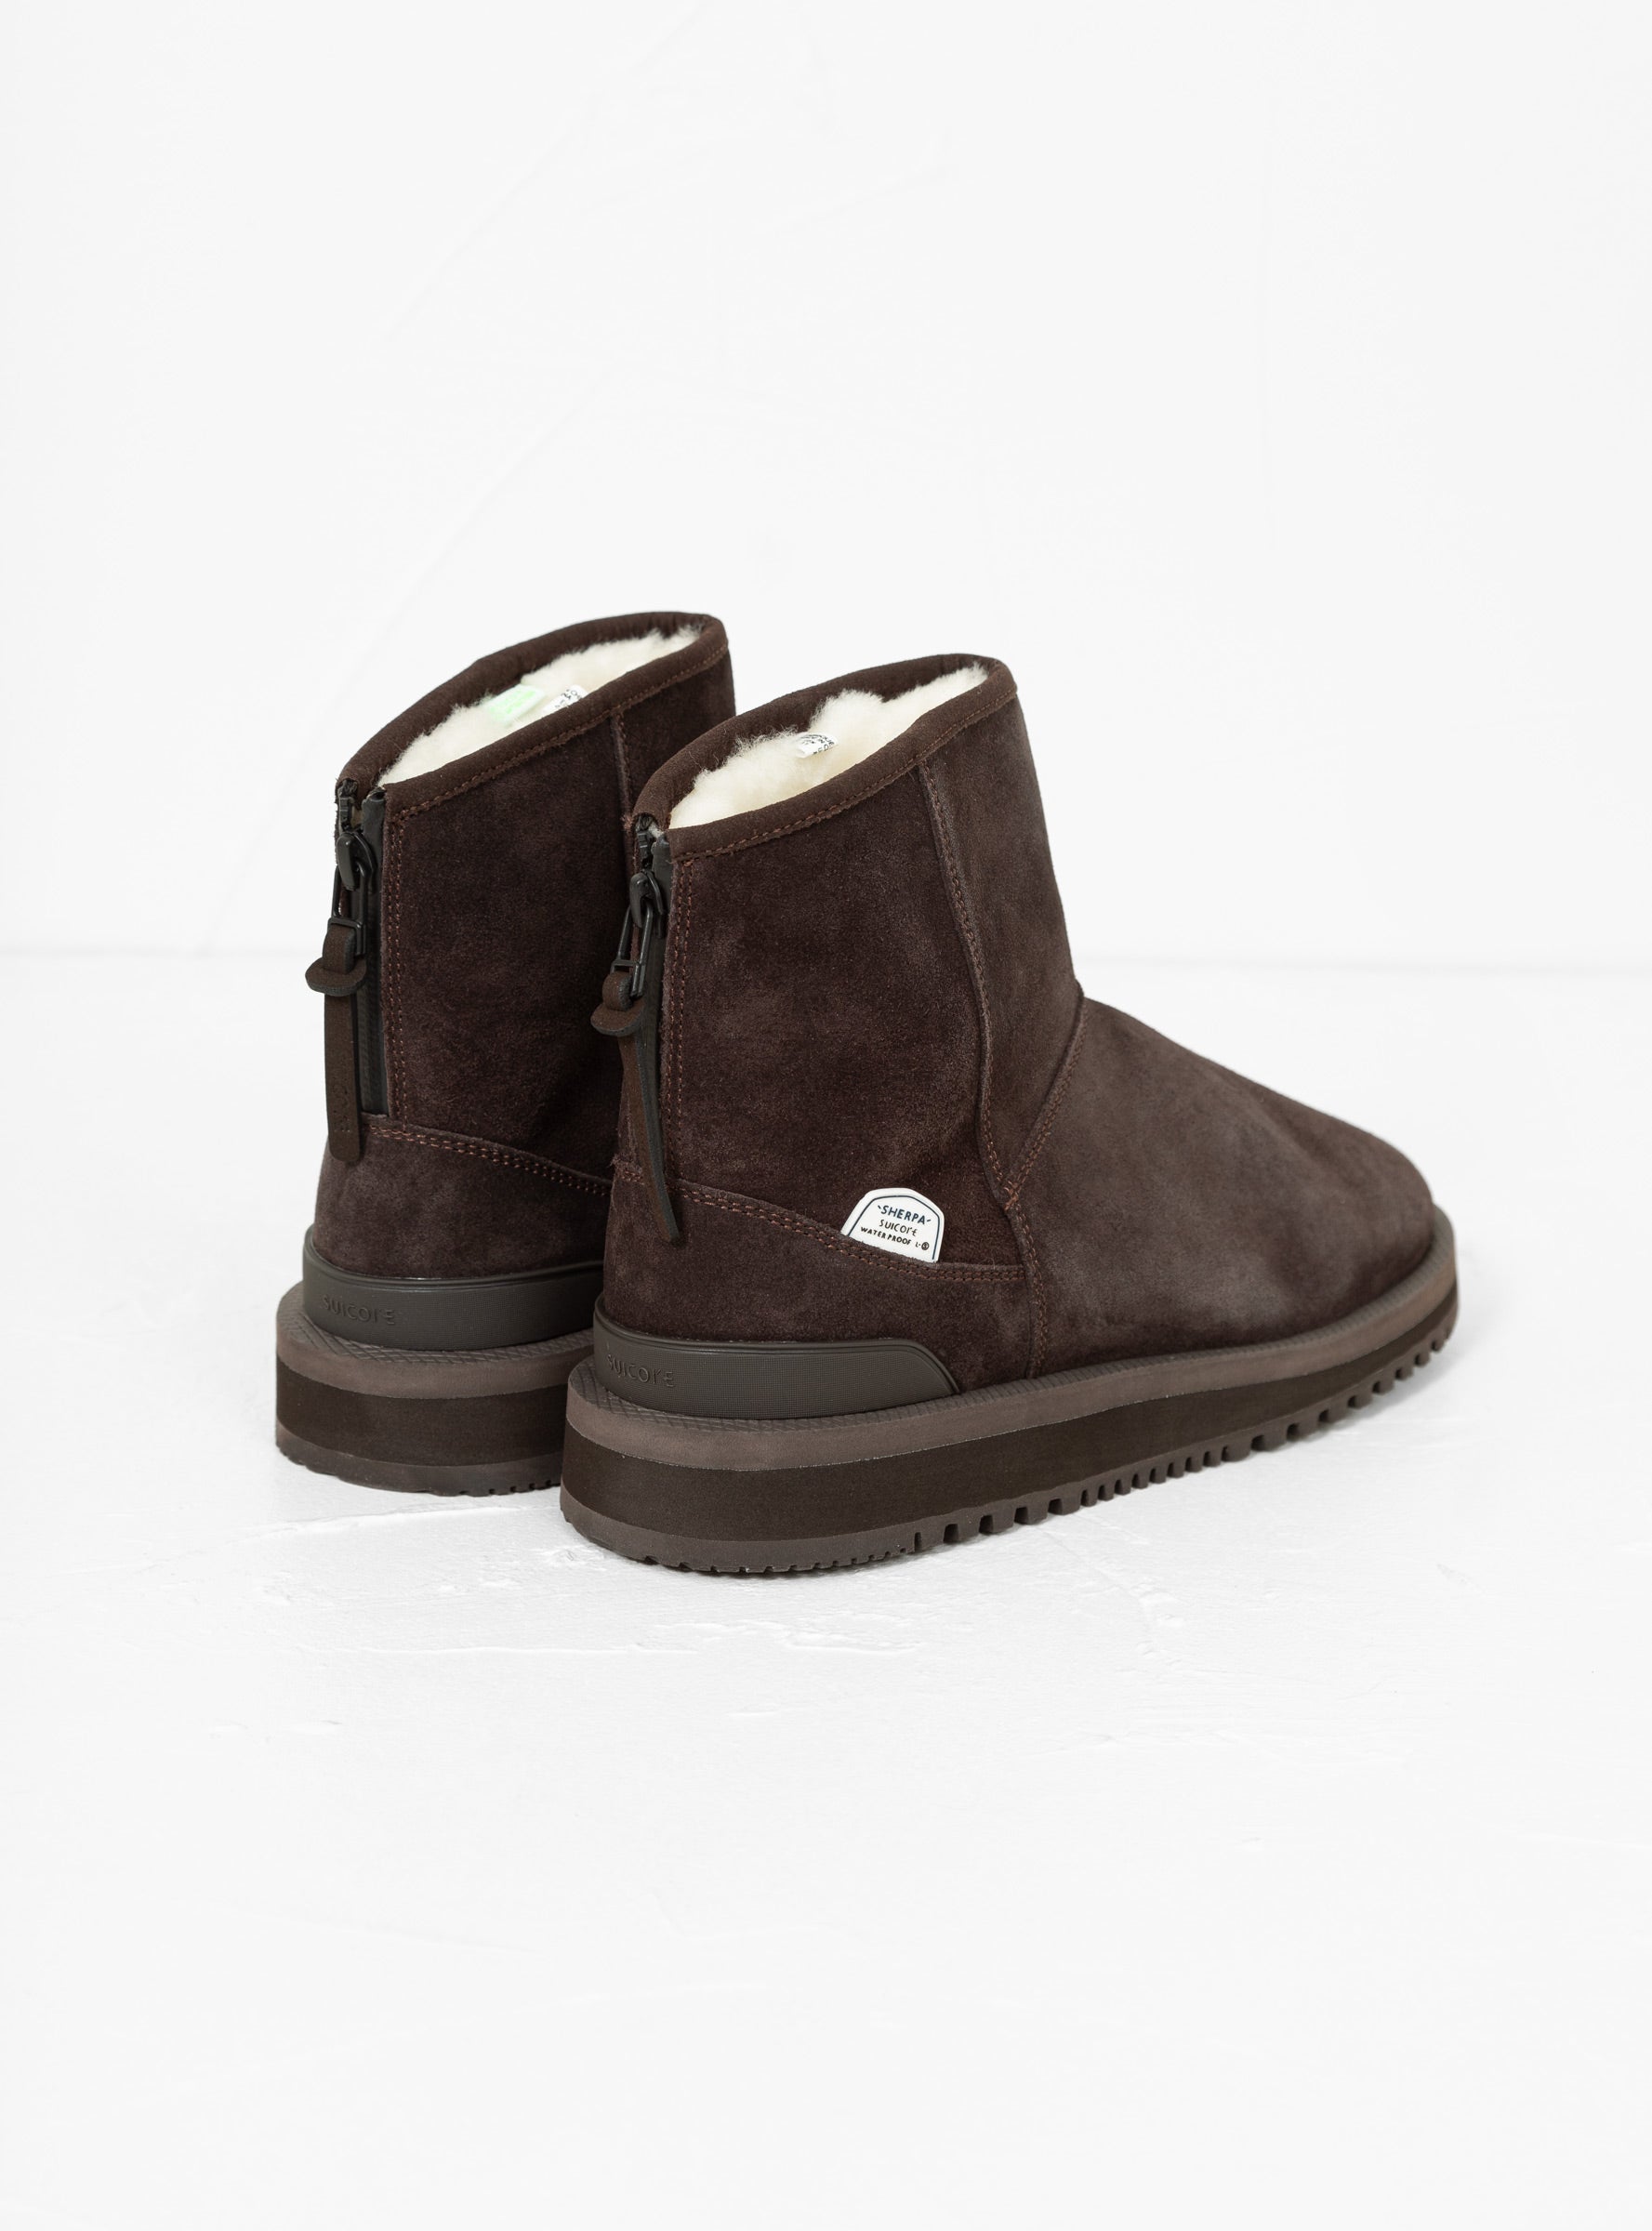 Suicoke Suicoke Els-Mwpab Boots Dark Brown - Size: UK 11